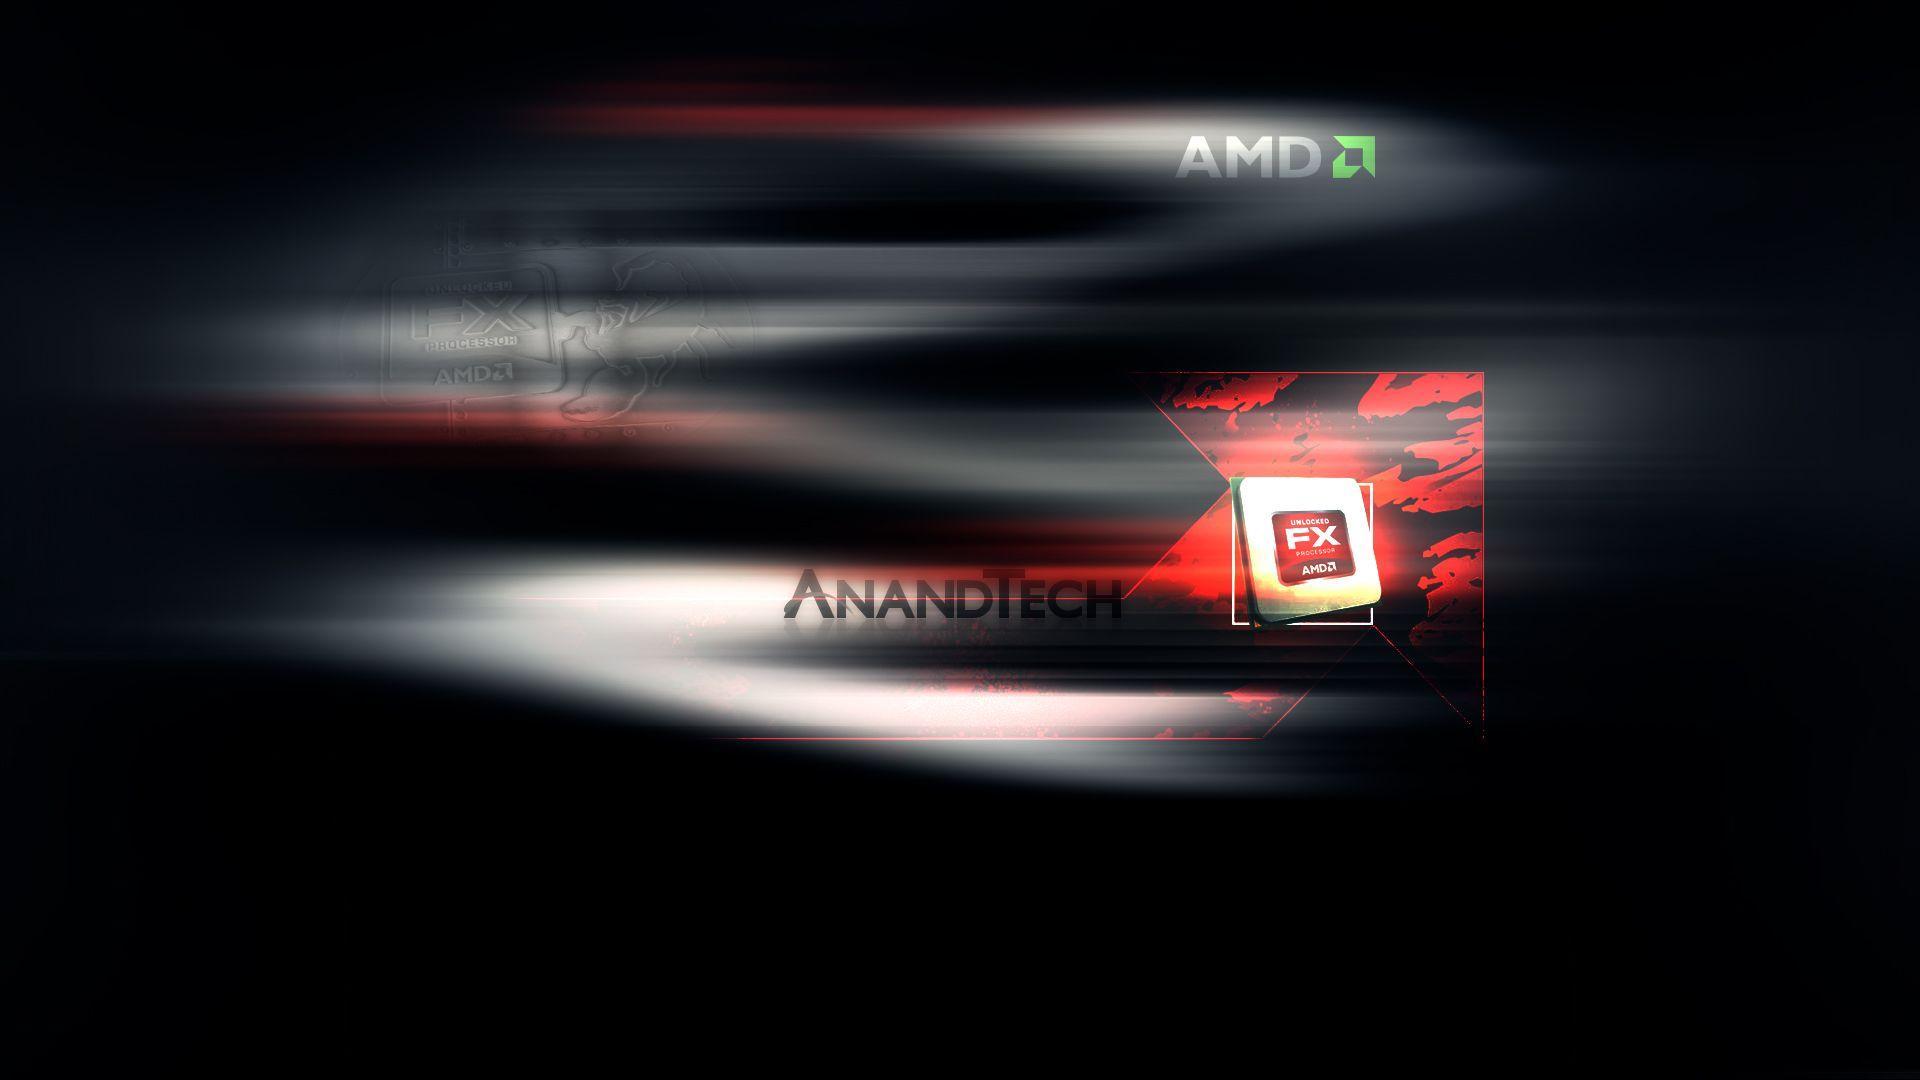 AMD HD Wallpaper